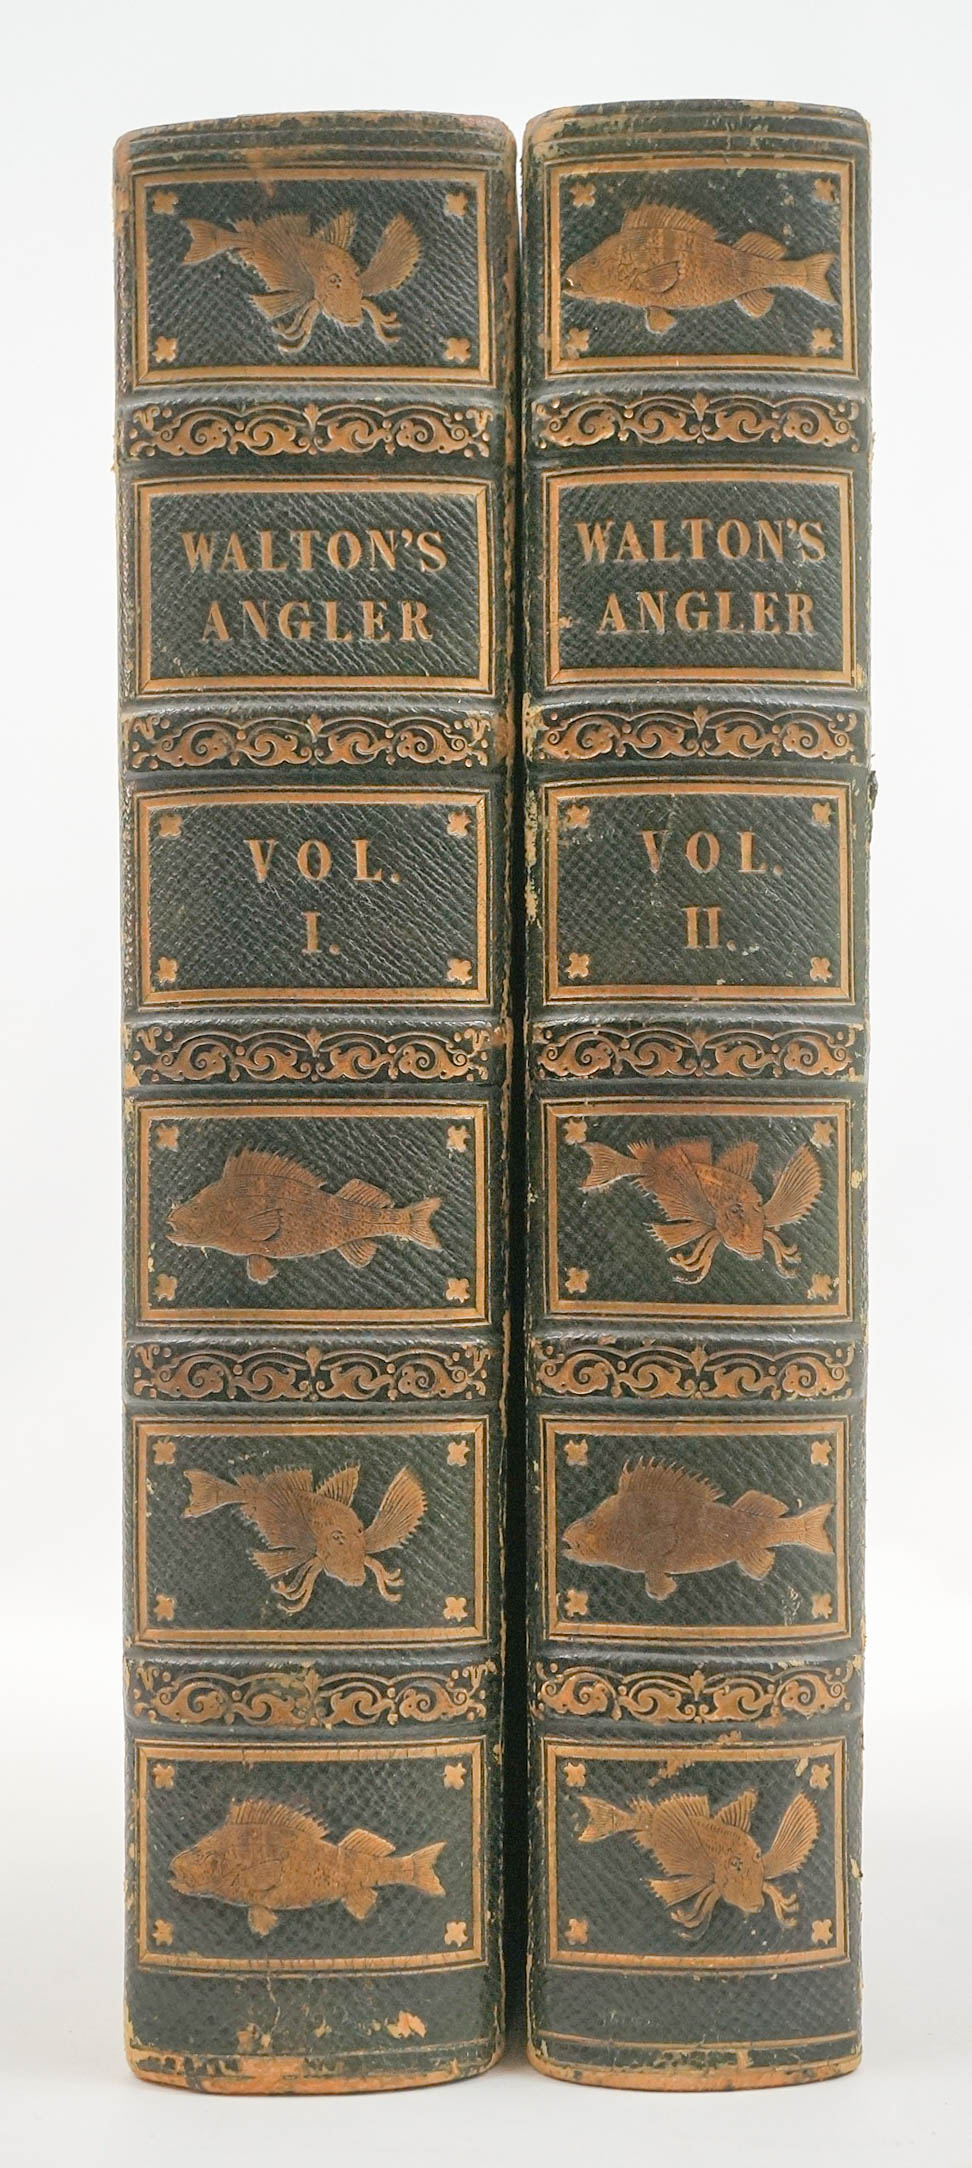 Walton's Angler Vol. I and II